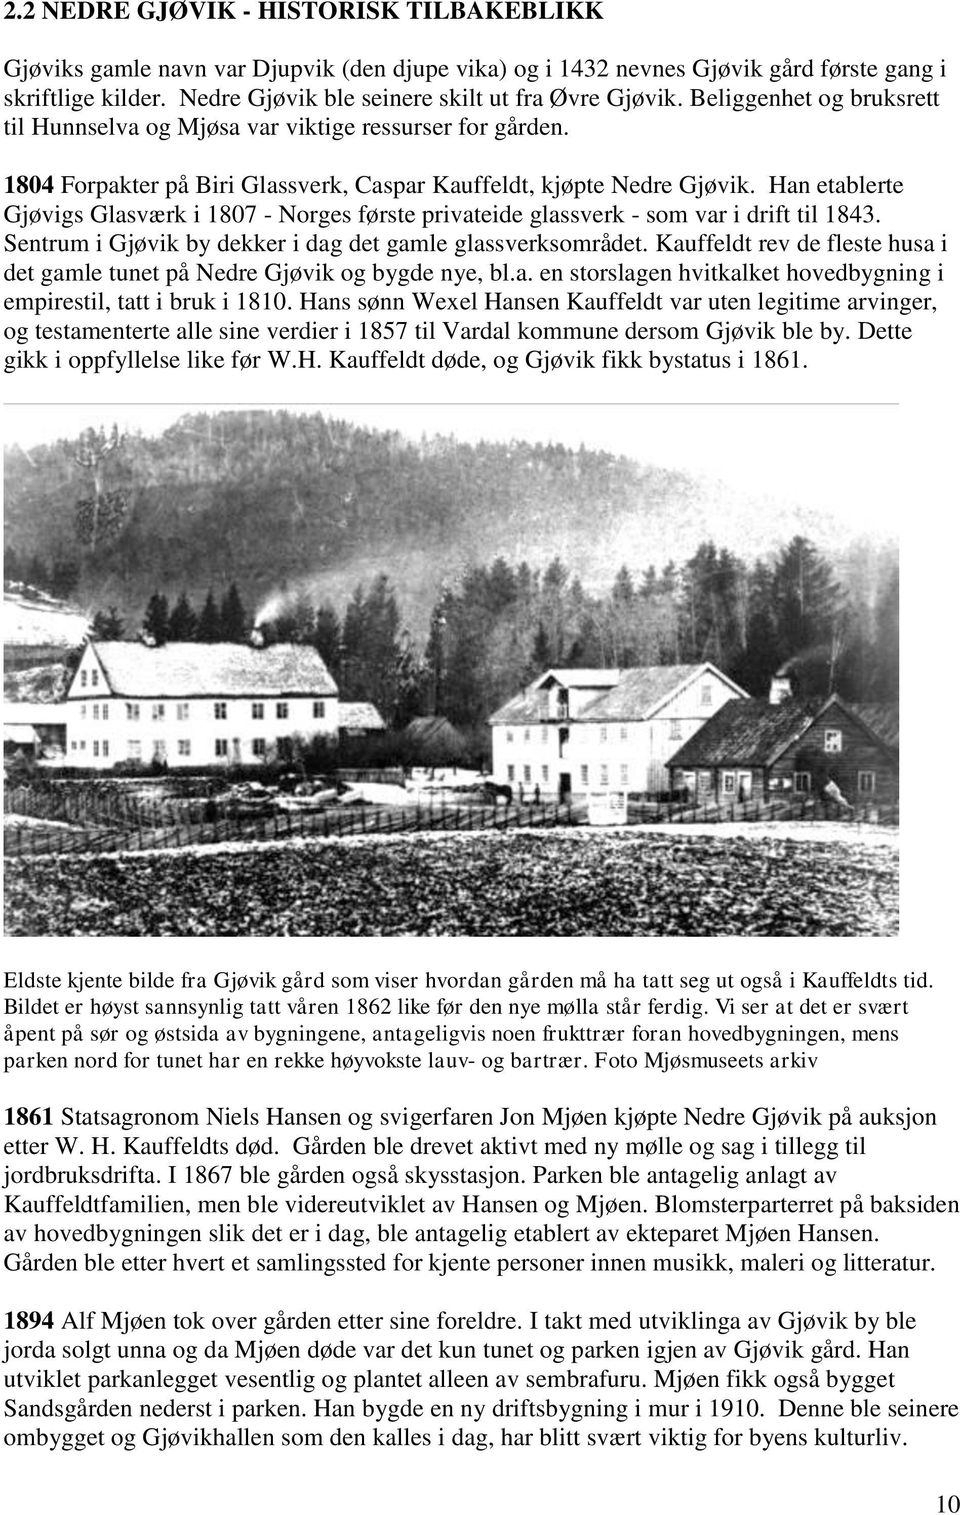 1804 Forpakter på Biri Glassverk, Caspar Kauffeldt, kjøpte Nedre Gjøvik. Han etablerte Gjøvigs Glasværk i 1807 - Norges første privateide glassverk - som var i drift til 1843.